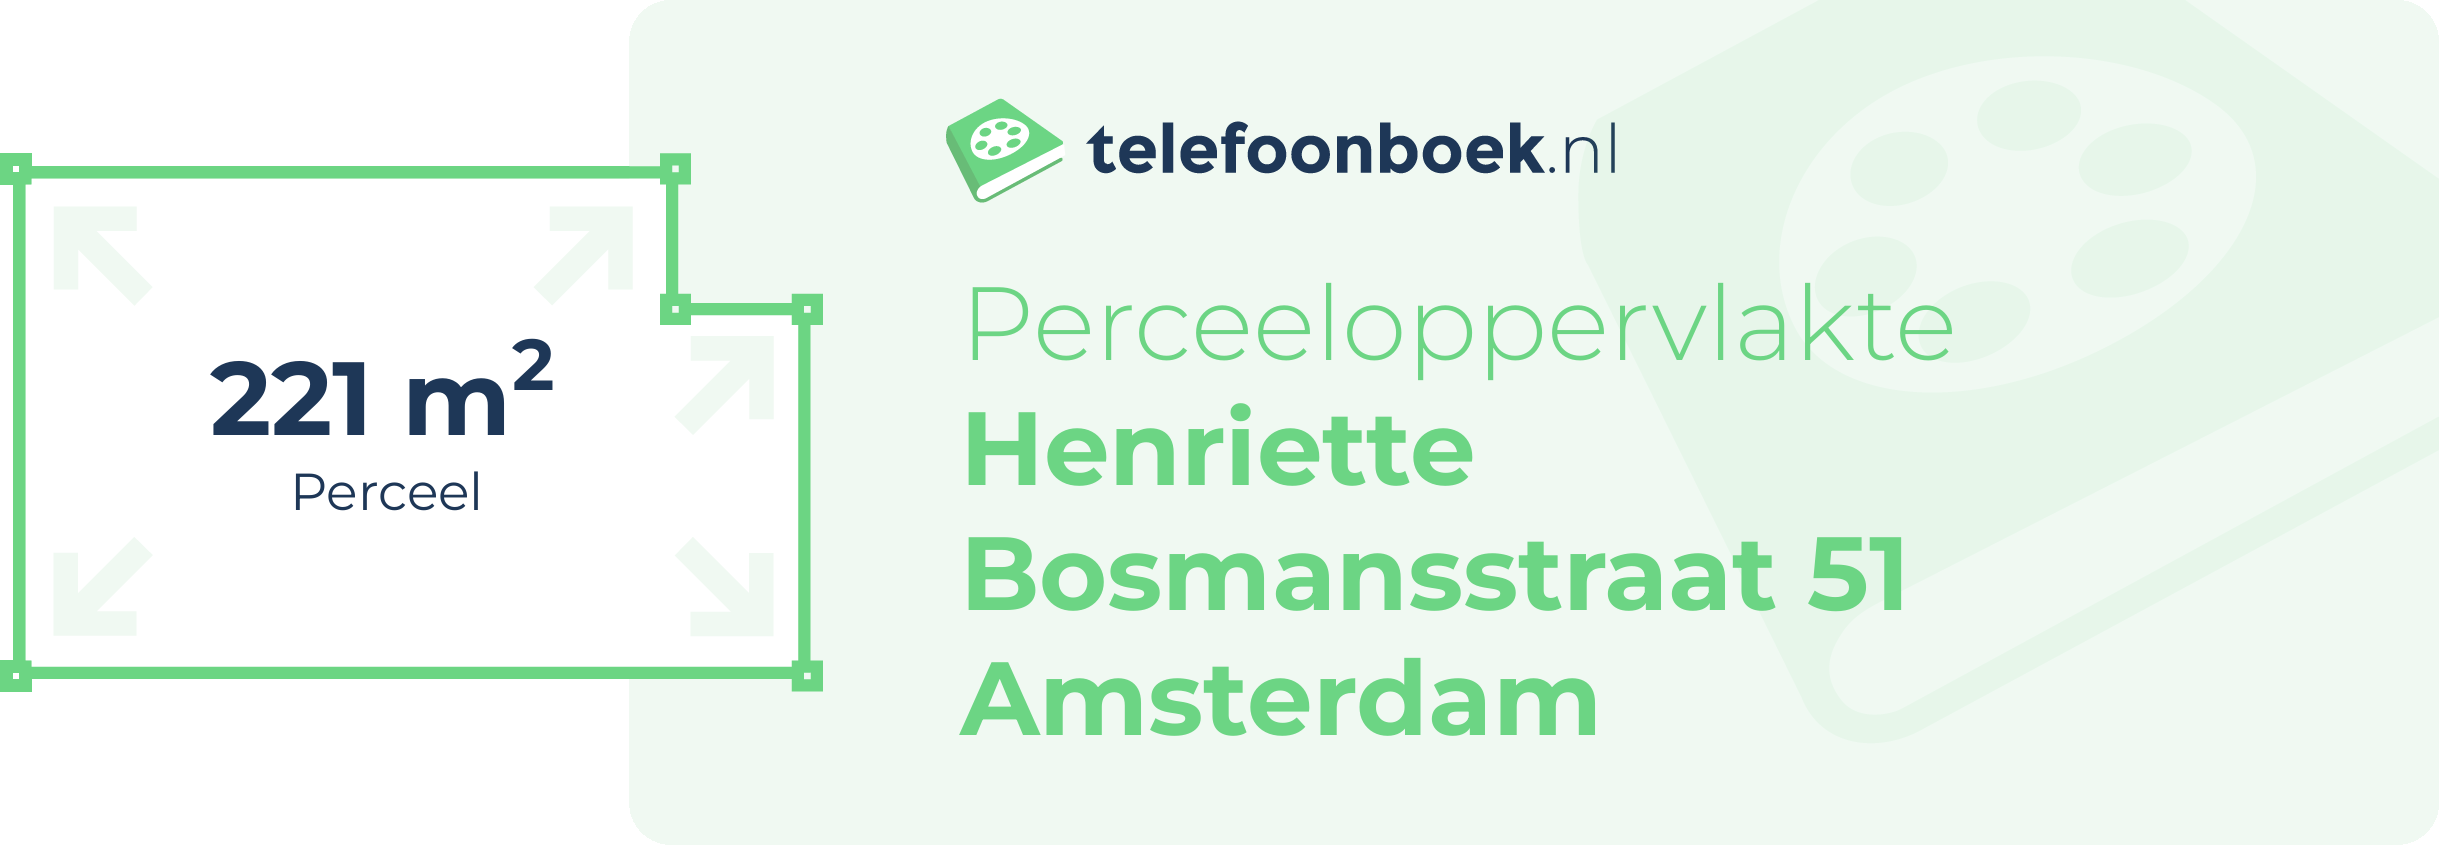 Perceeloppervlakte Henriette Bosmansstraat 51 Amsterdam